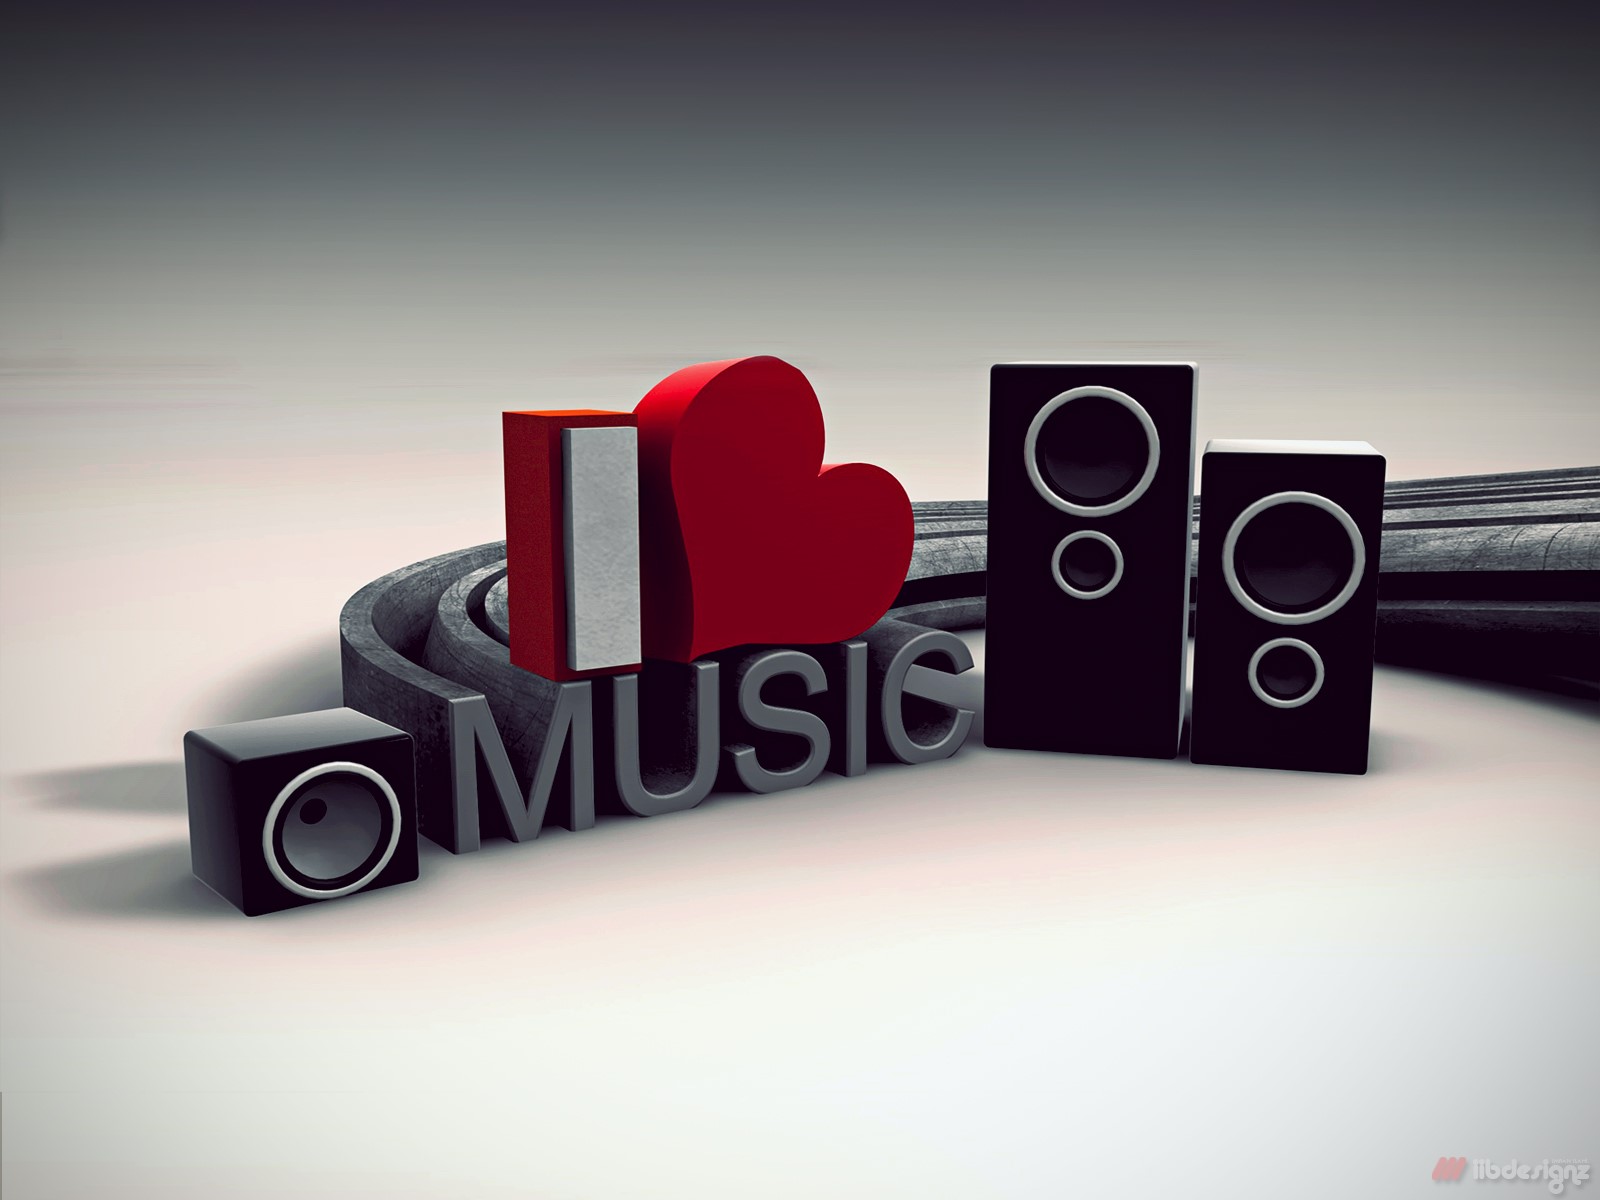 I love music m. Обложки музыкальных групп. Обложка сообщества музыка. Я люблю музыку картинки. Музыкальная обложка для группы ВК.